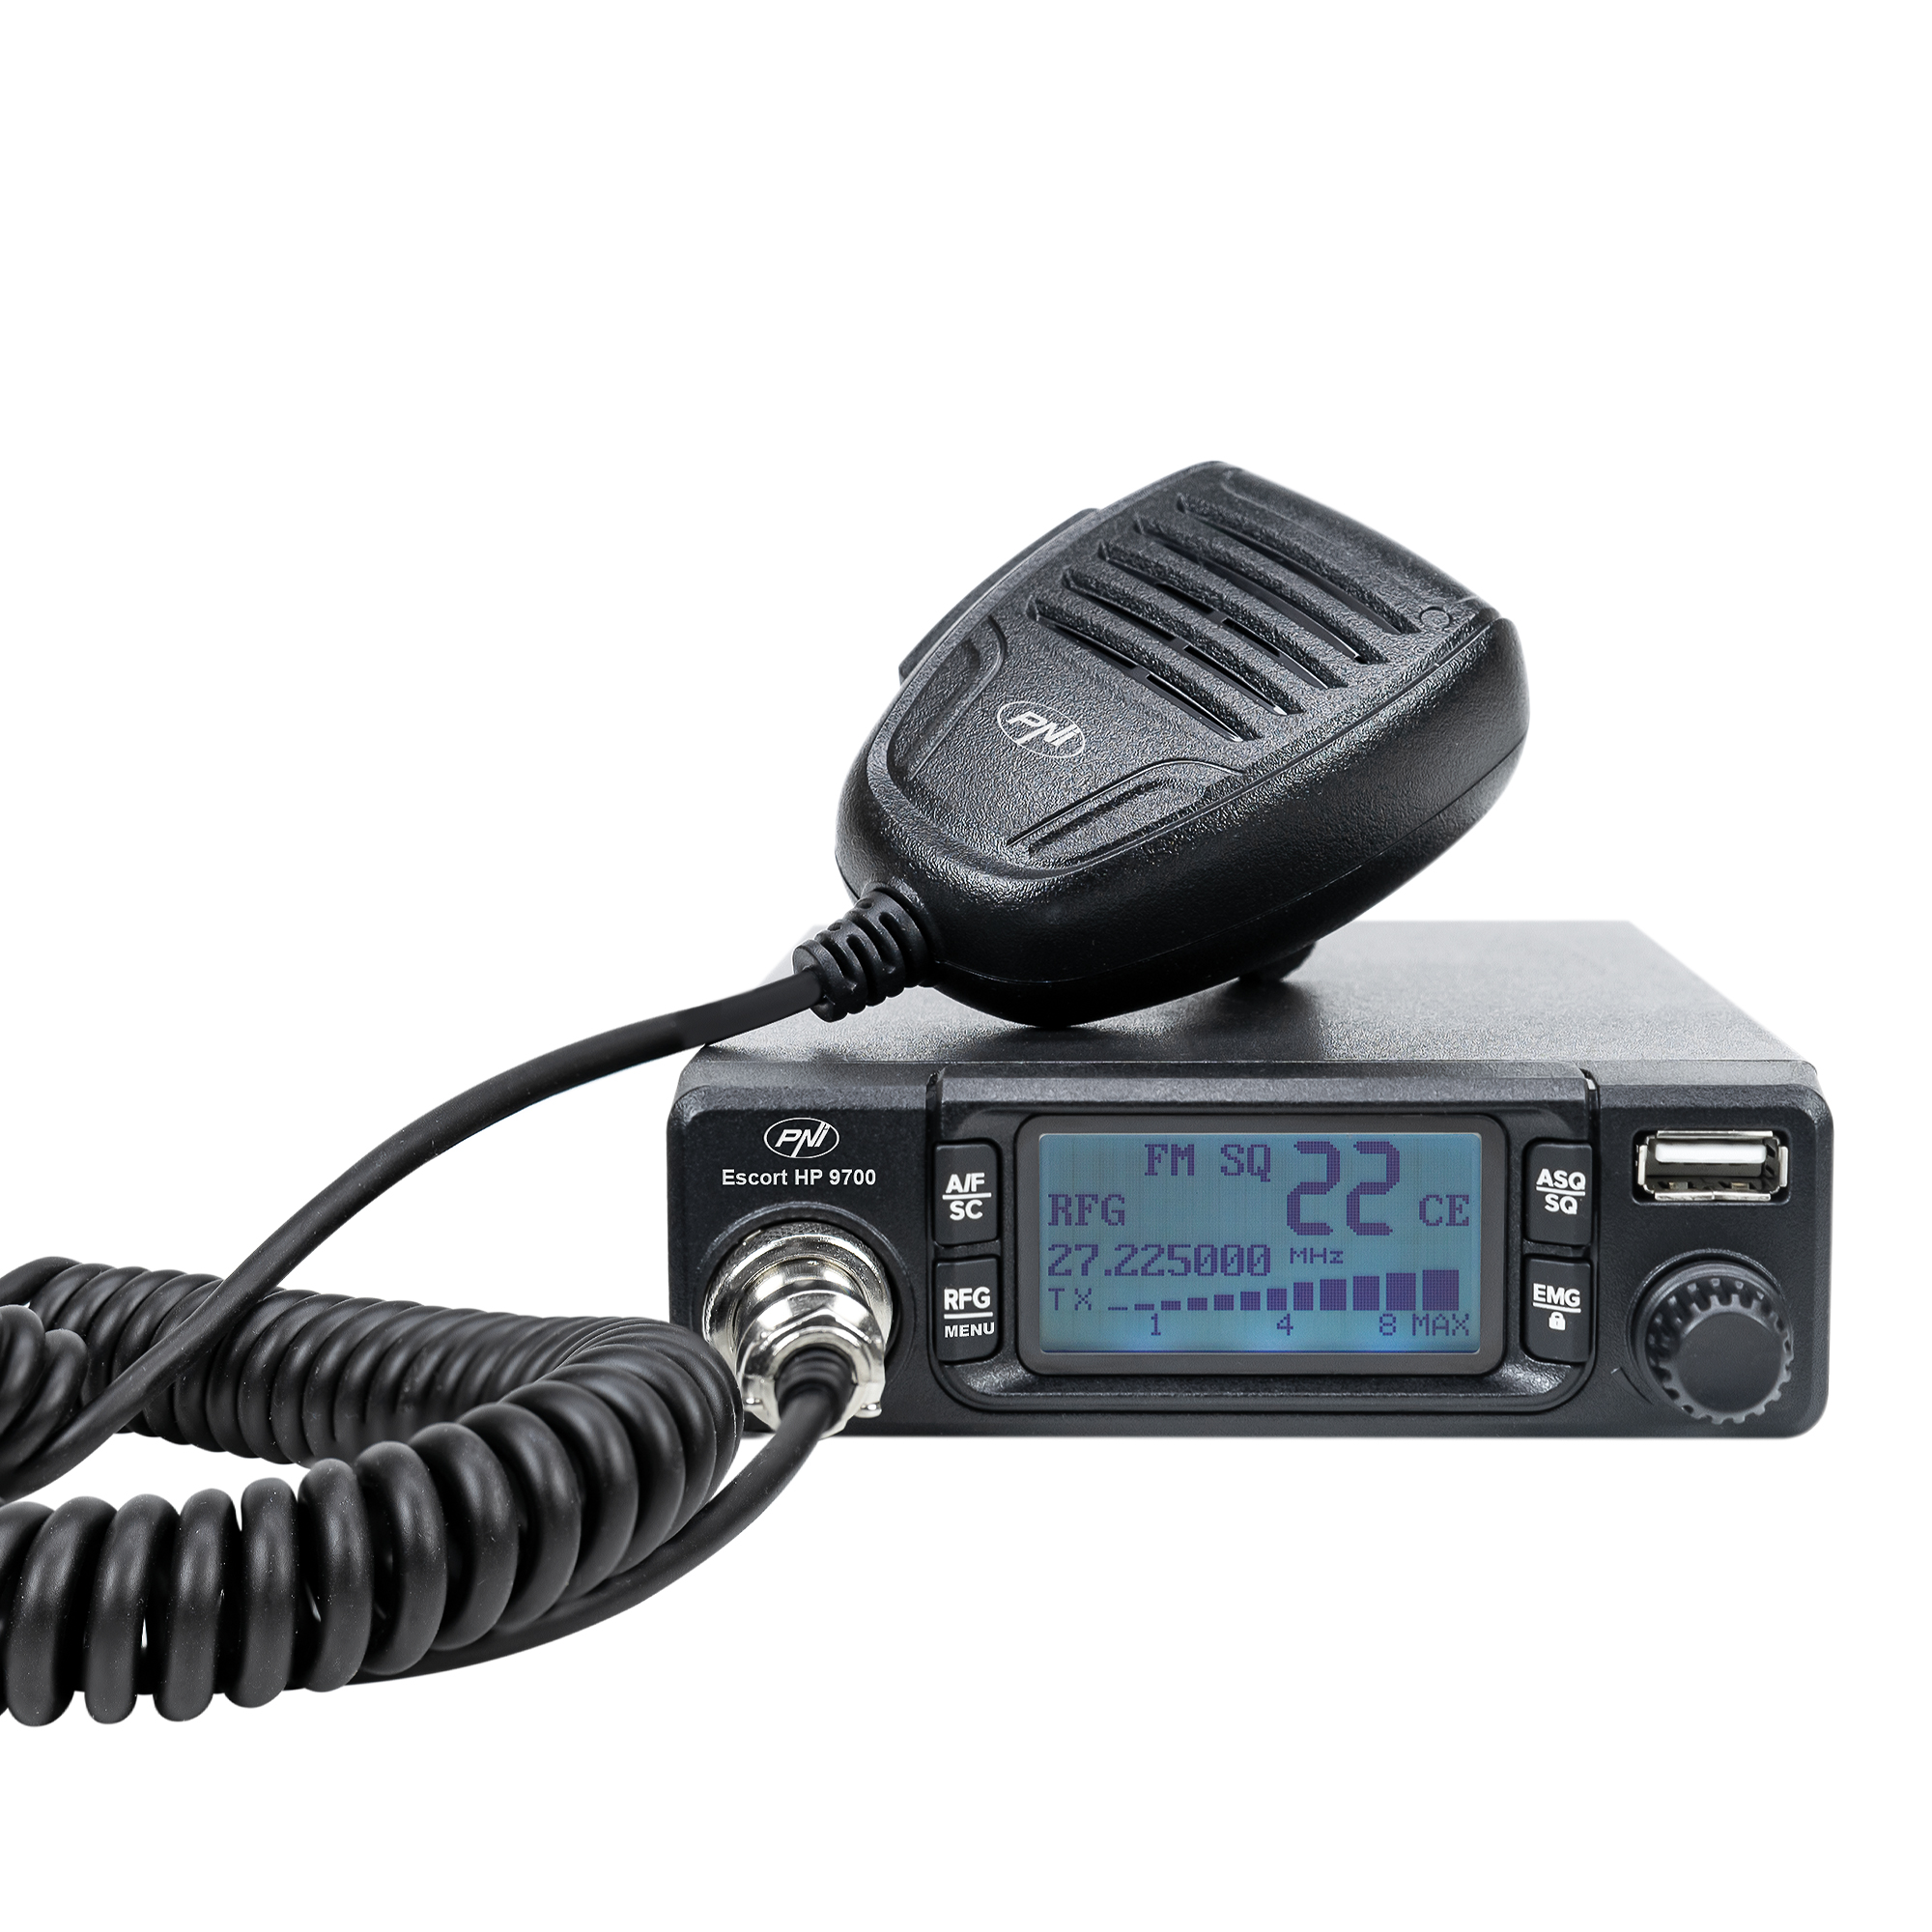 CB-Radiosender HP 9700 mit ANC-Funktion und 5V 1,7A 